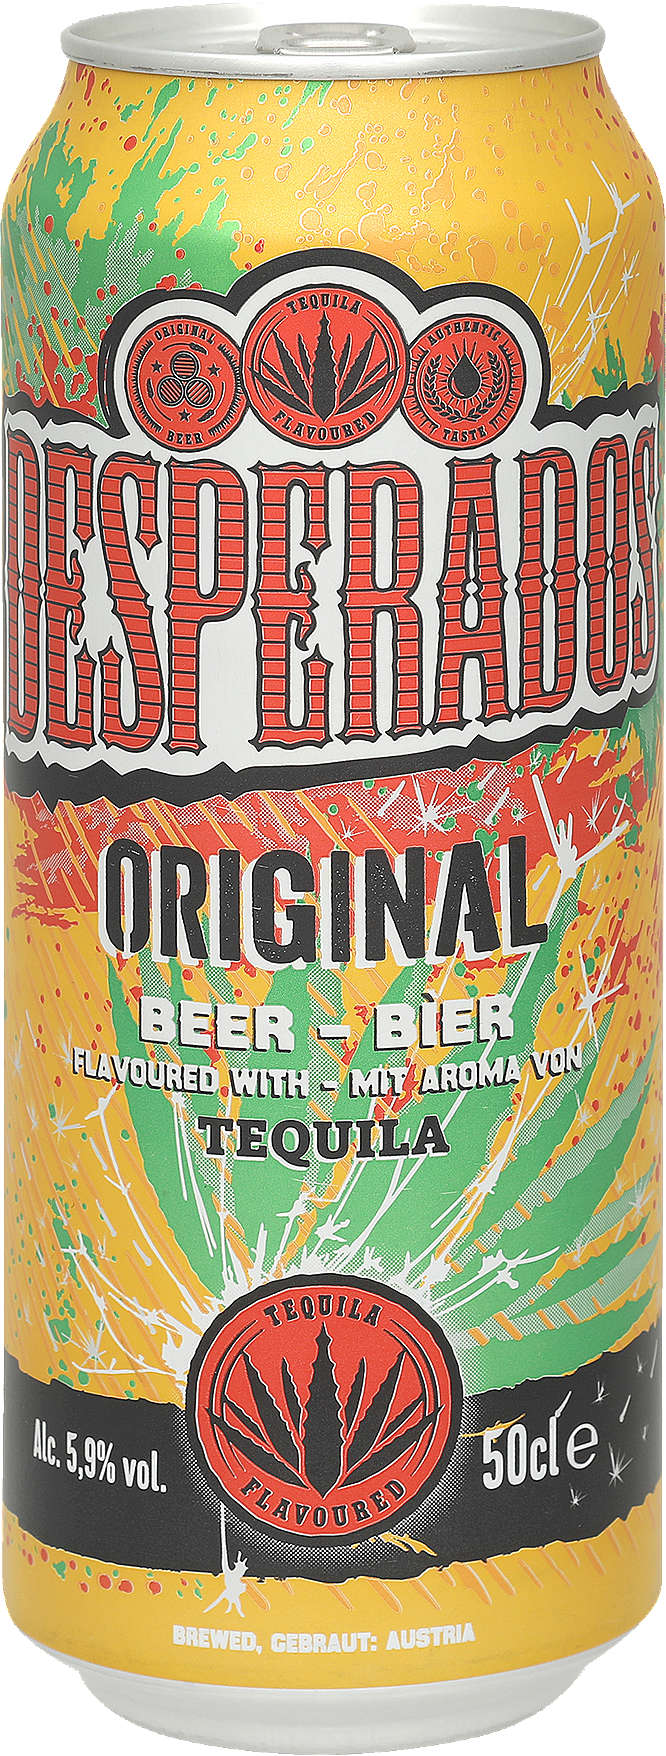 Zobrazenie výrobku Desperados Svetlé pivo